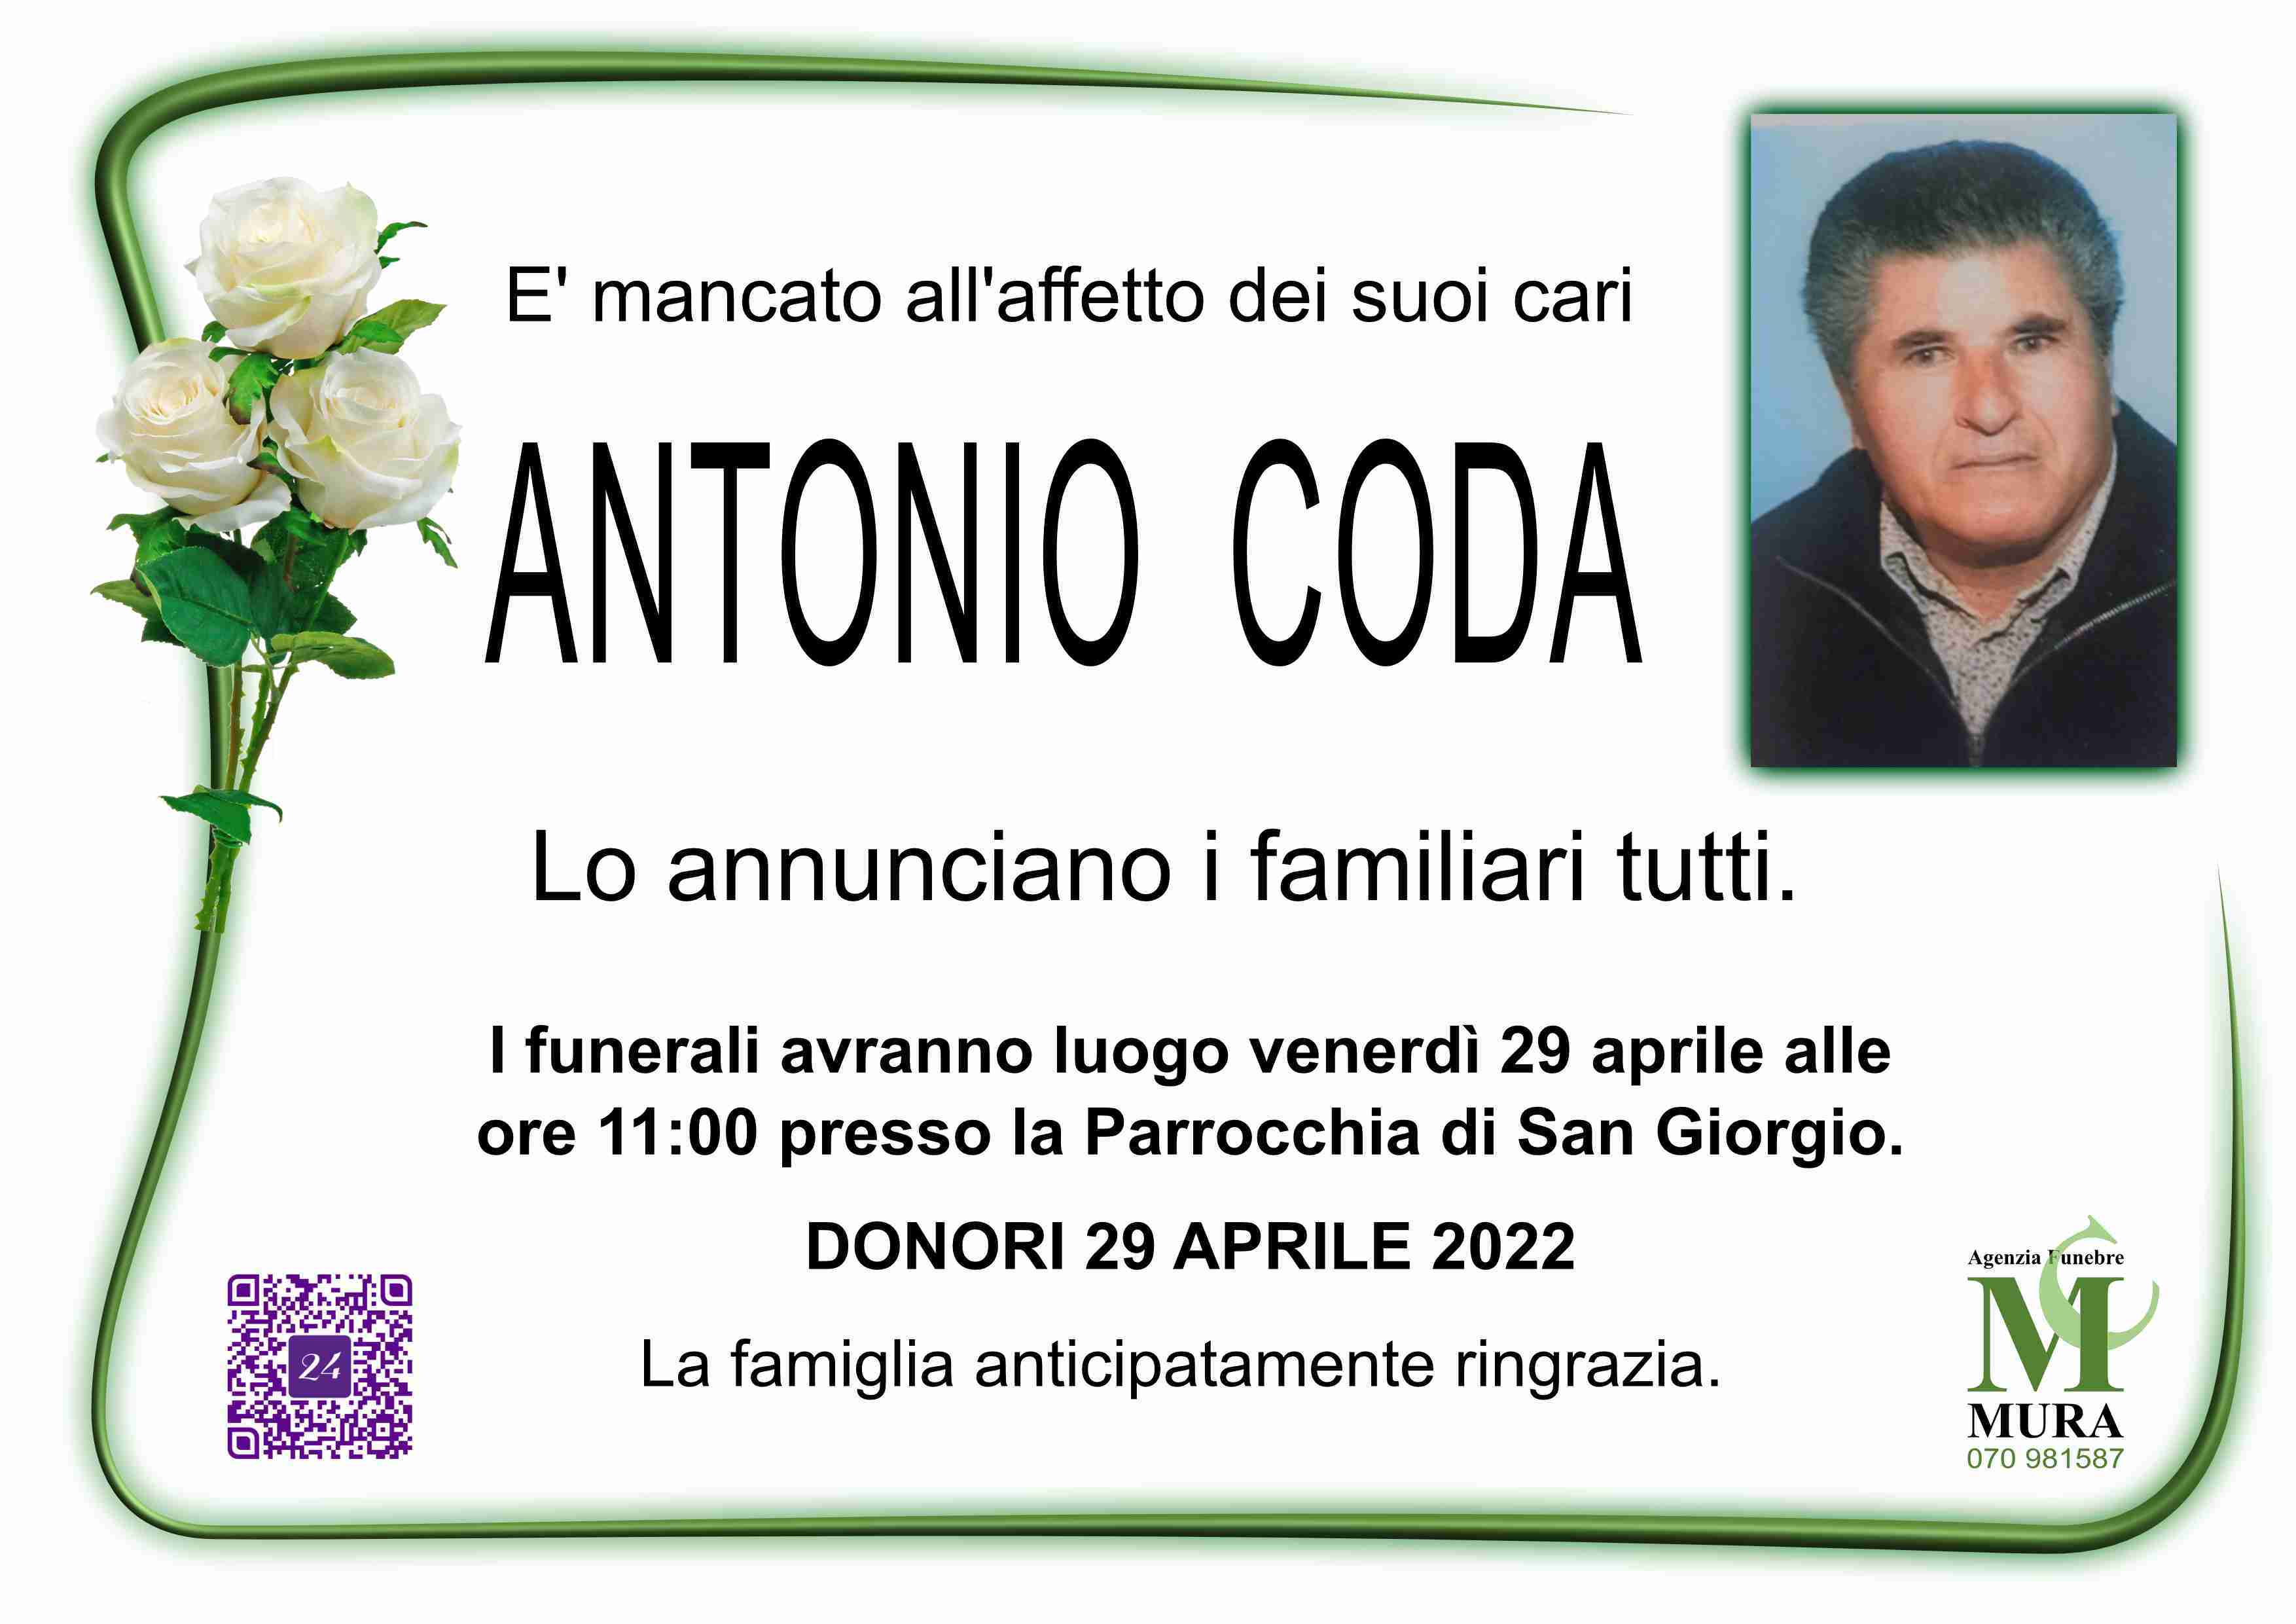 Antonio Coda